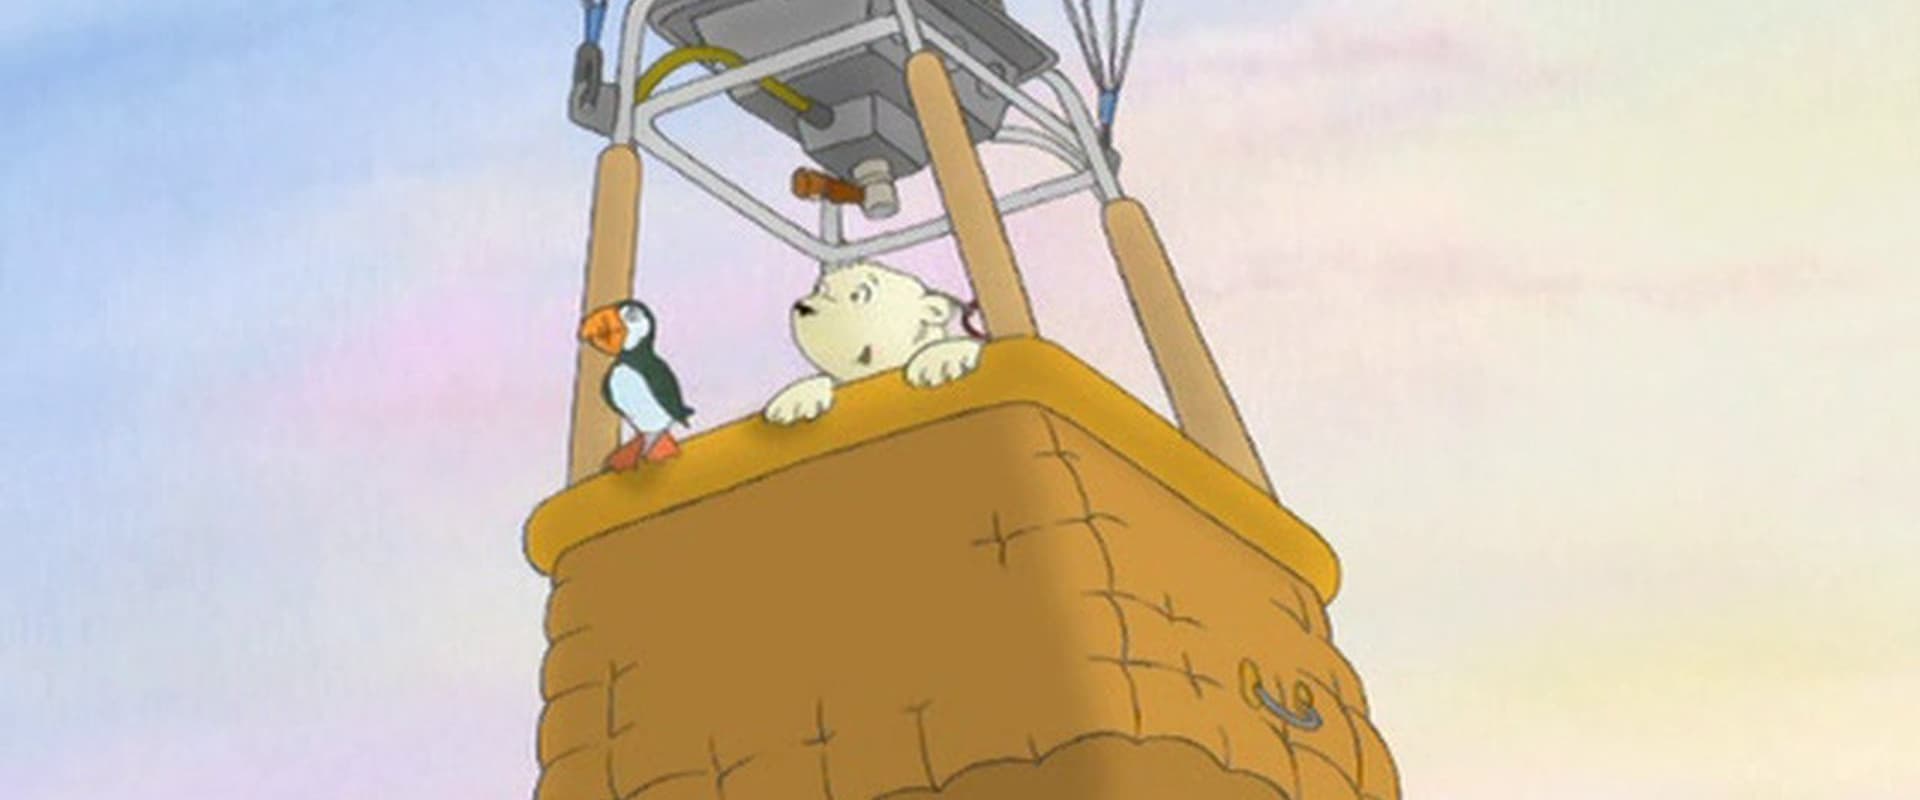 The Little Polar Bear: The Dream of Flying